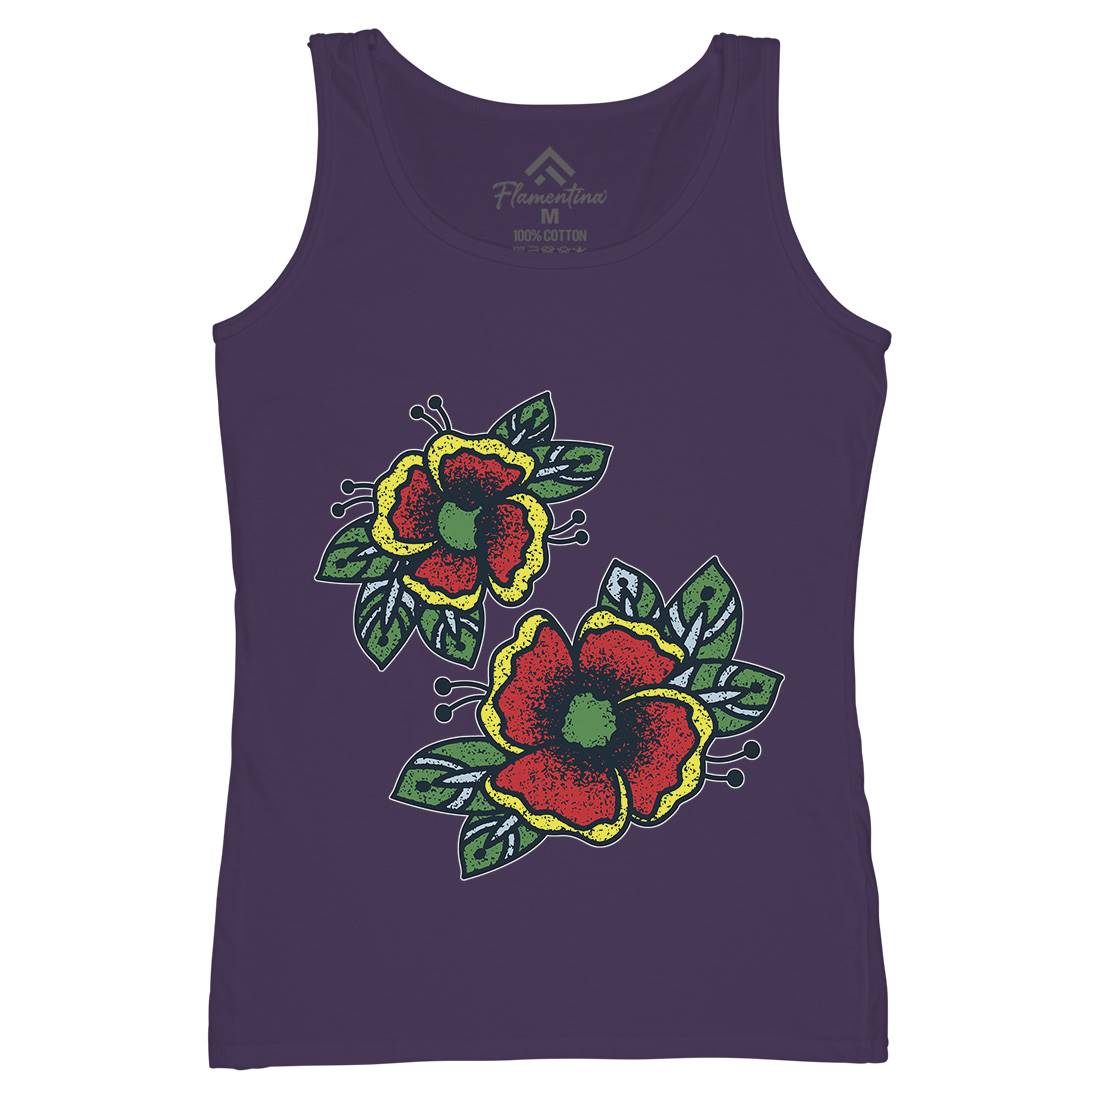 Flowers Womens Organic Tank Top Vest Tattoo A968